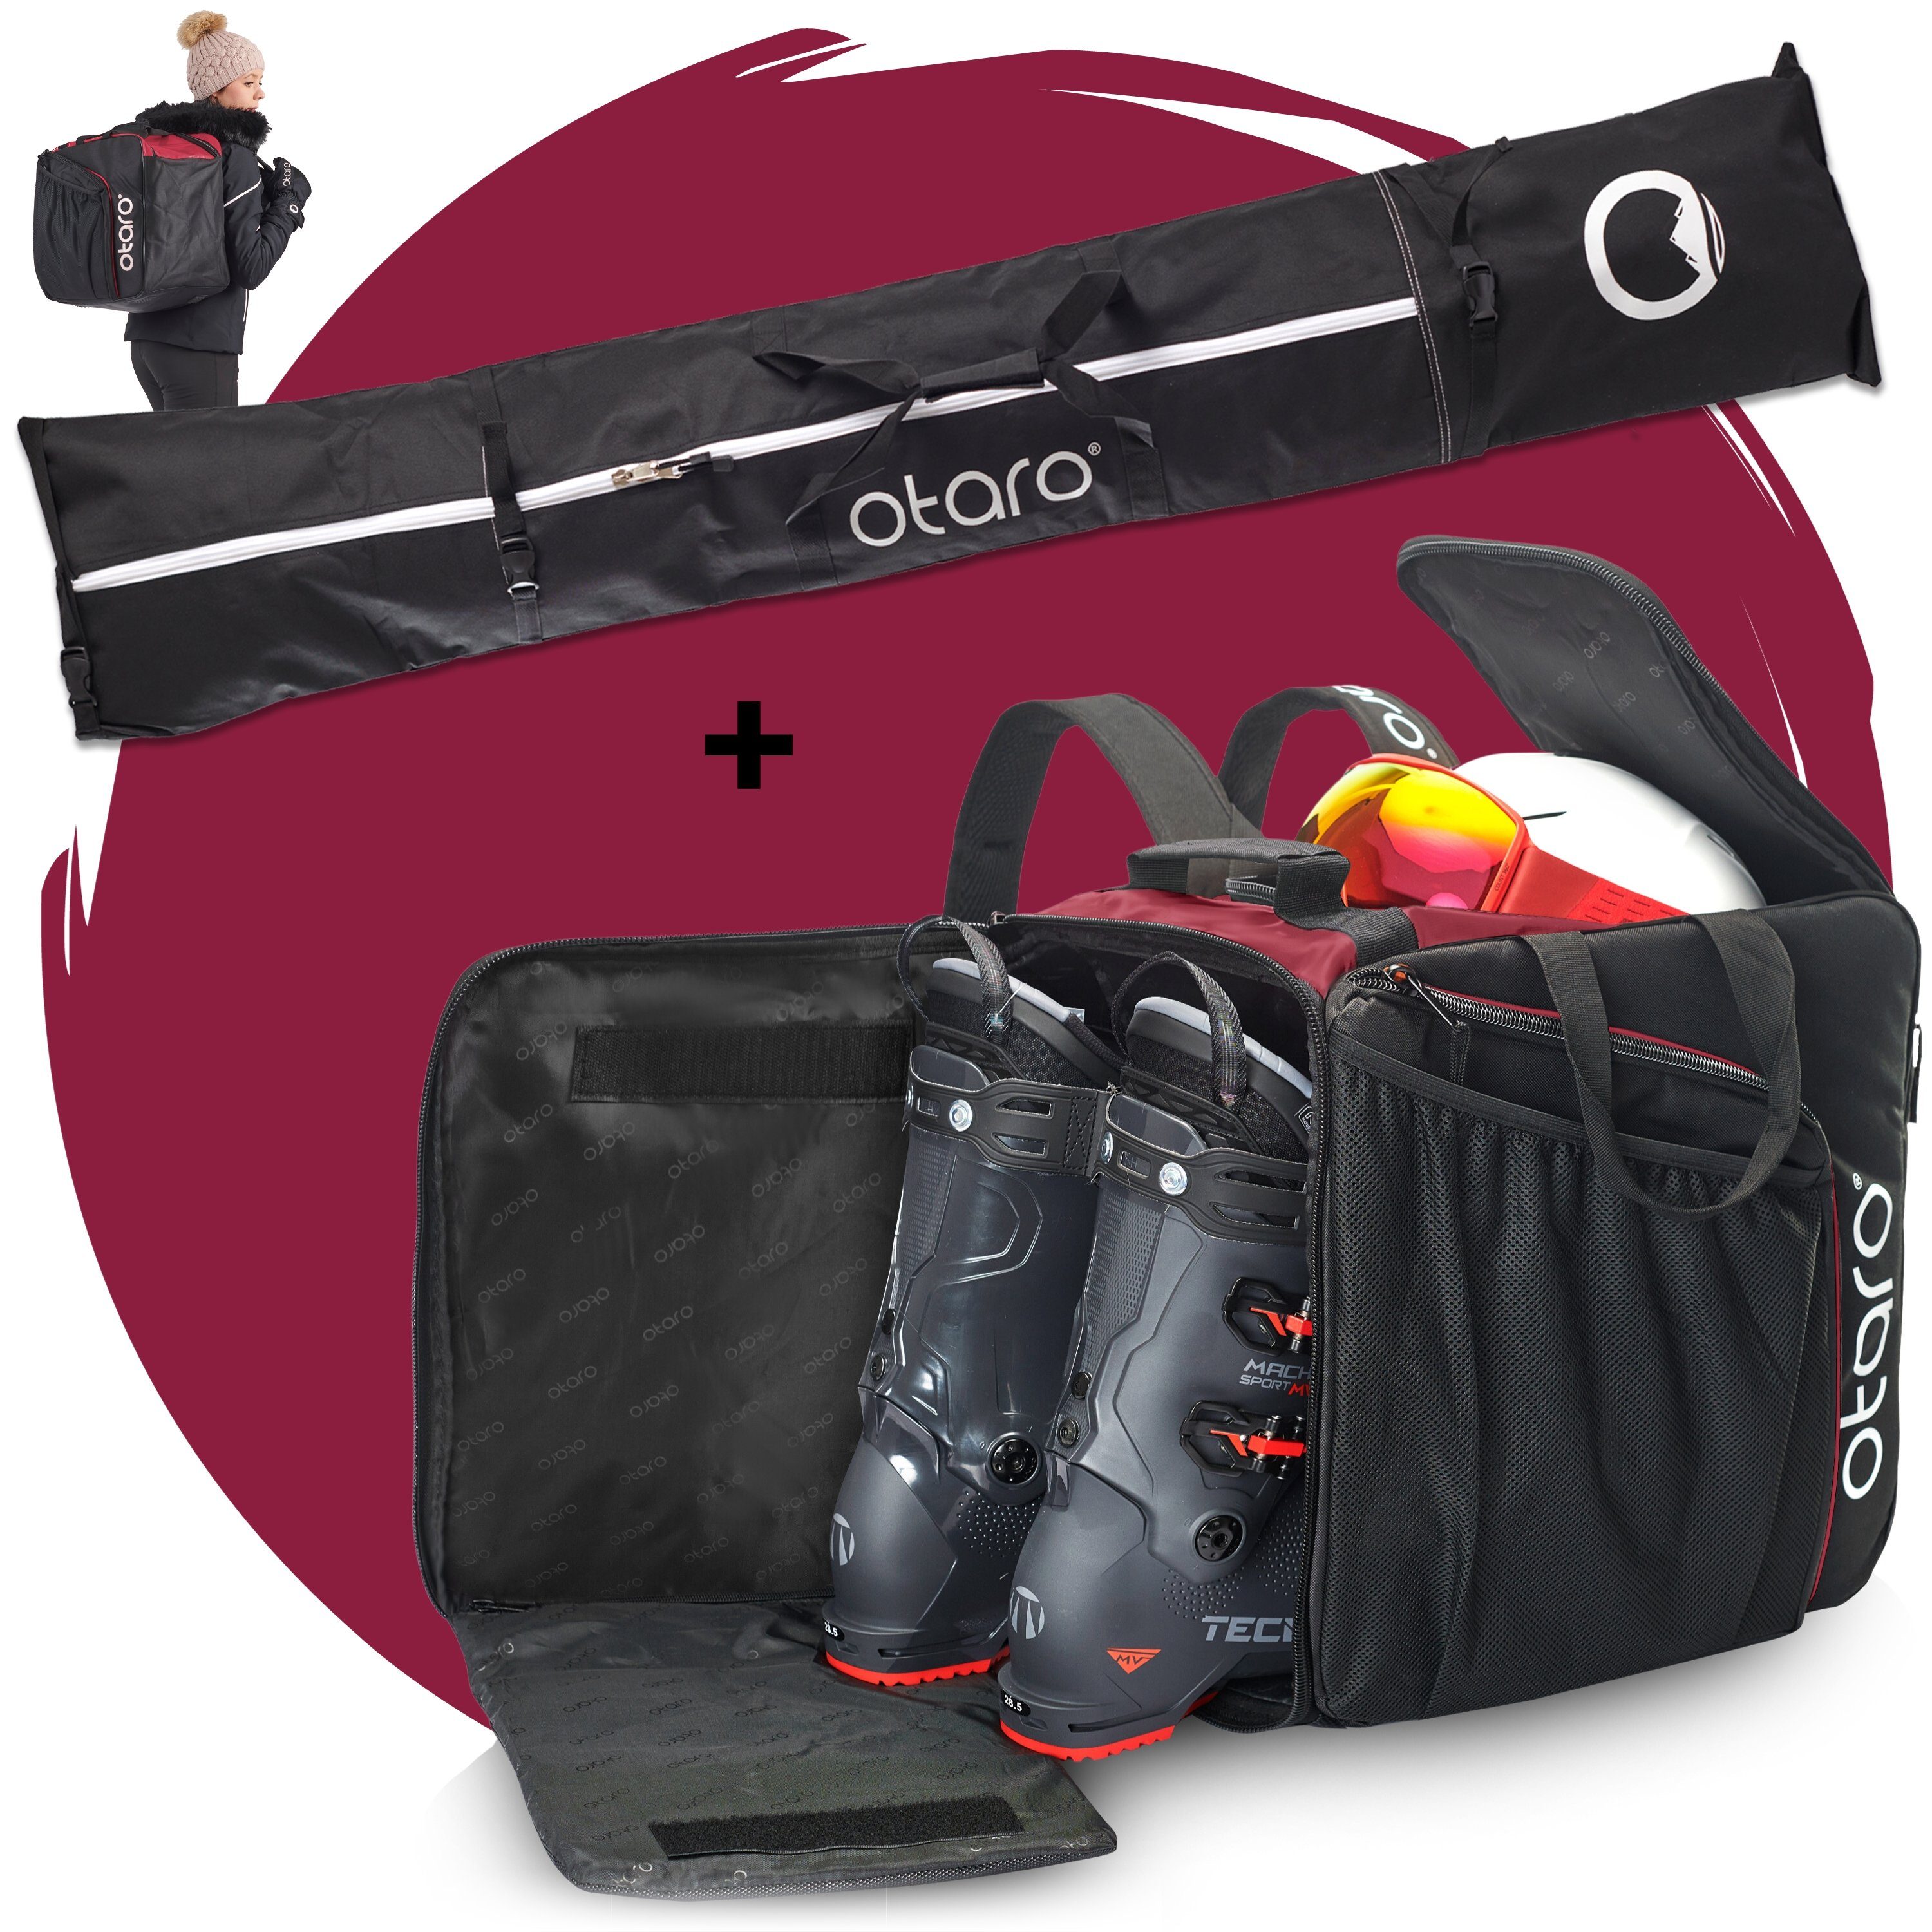 Skischuhtasche mit deine Bordeauxrot Standfläche, Ausrüstung, Stöcke) Otaro + 2 für (Schutz 2 Set: Ski durchdacht, für Paar ausklappbare Schuhfach Schwarz Perfekt & Ski Paar Skitasche, Skitasche Pro-Set für